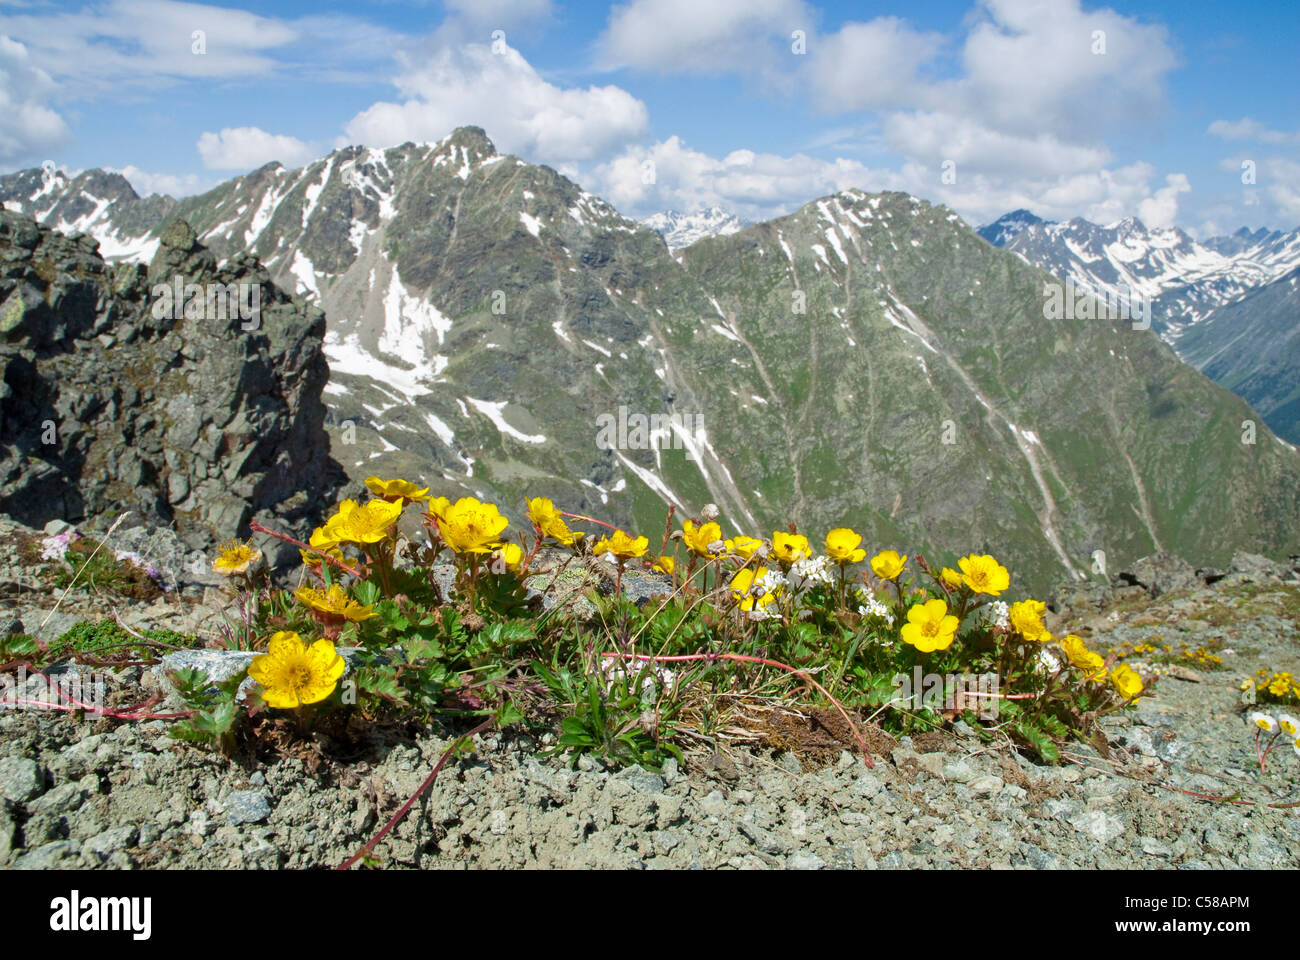 3000 Alpine, fleur, fleurs de montagne, montagnes, source de montagne, fleur, fleurir, s'épanouir, Grisons, Engadine Alpes, Europe, flore Banque D'Images